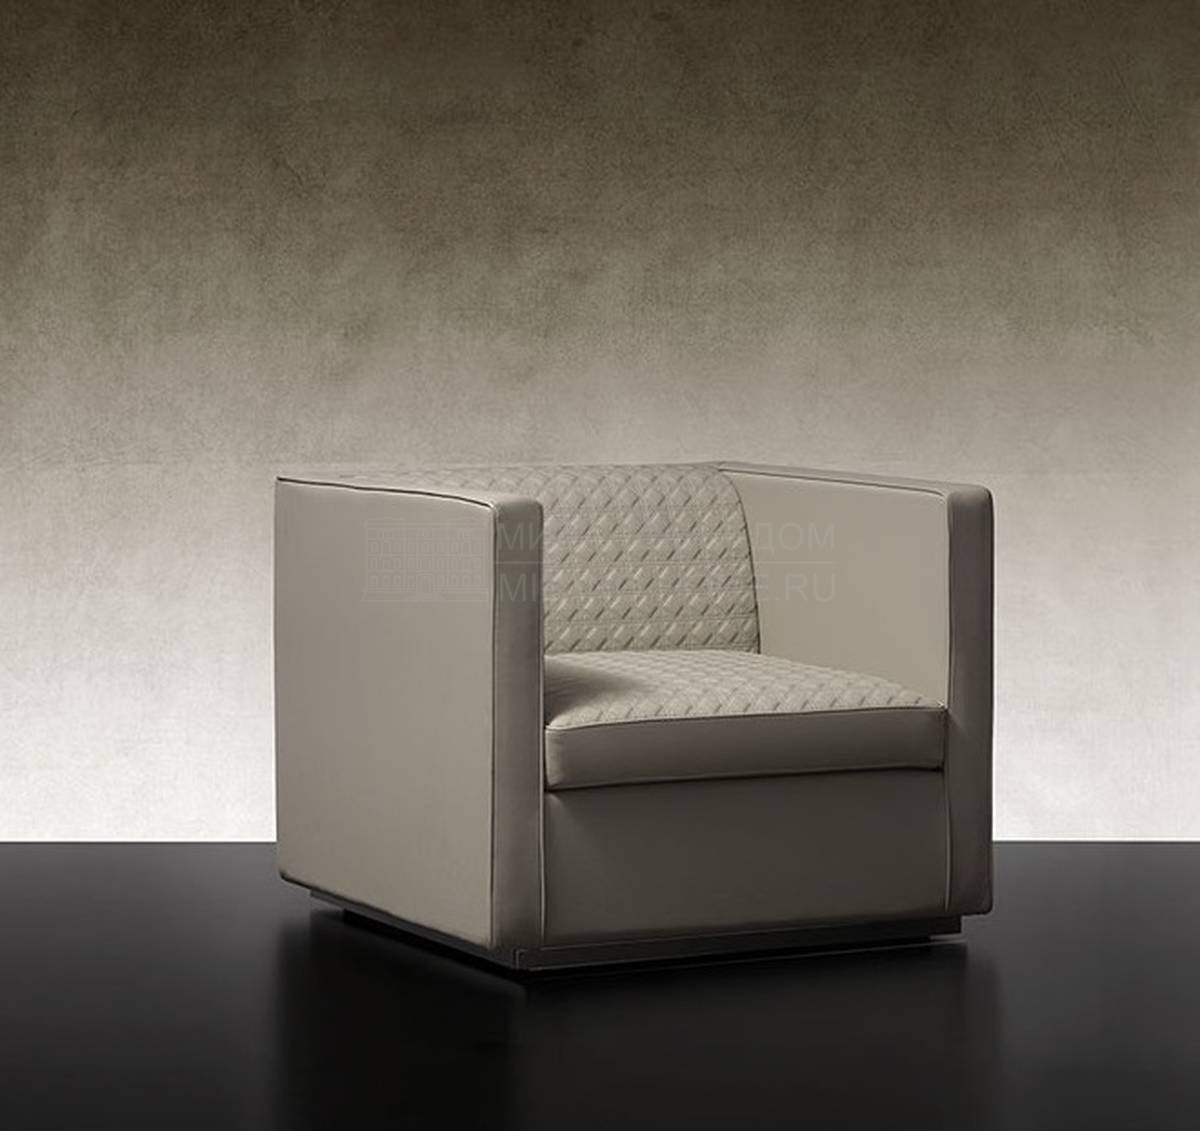 Кожаное кресло Avantgarde Poltrone из Италии фабрики REFLEX ANGELO